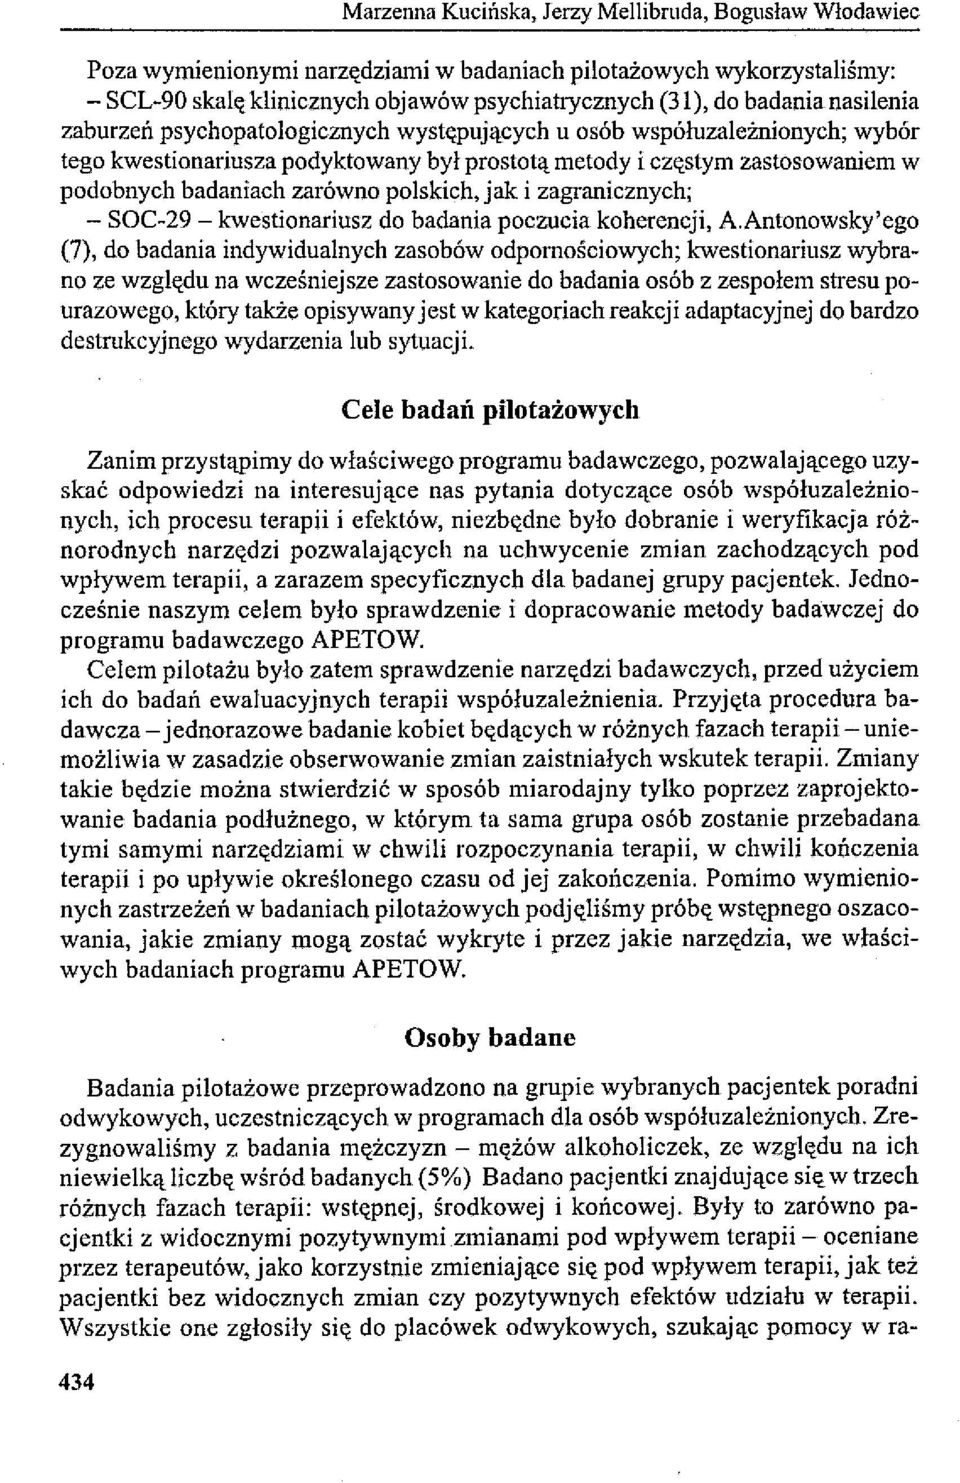 polskich, jak i zagranicznych; - SOC-29 - kwestionariusz do badania poczucia koherencji, A.